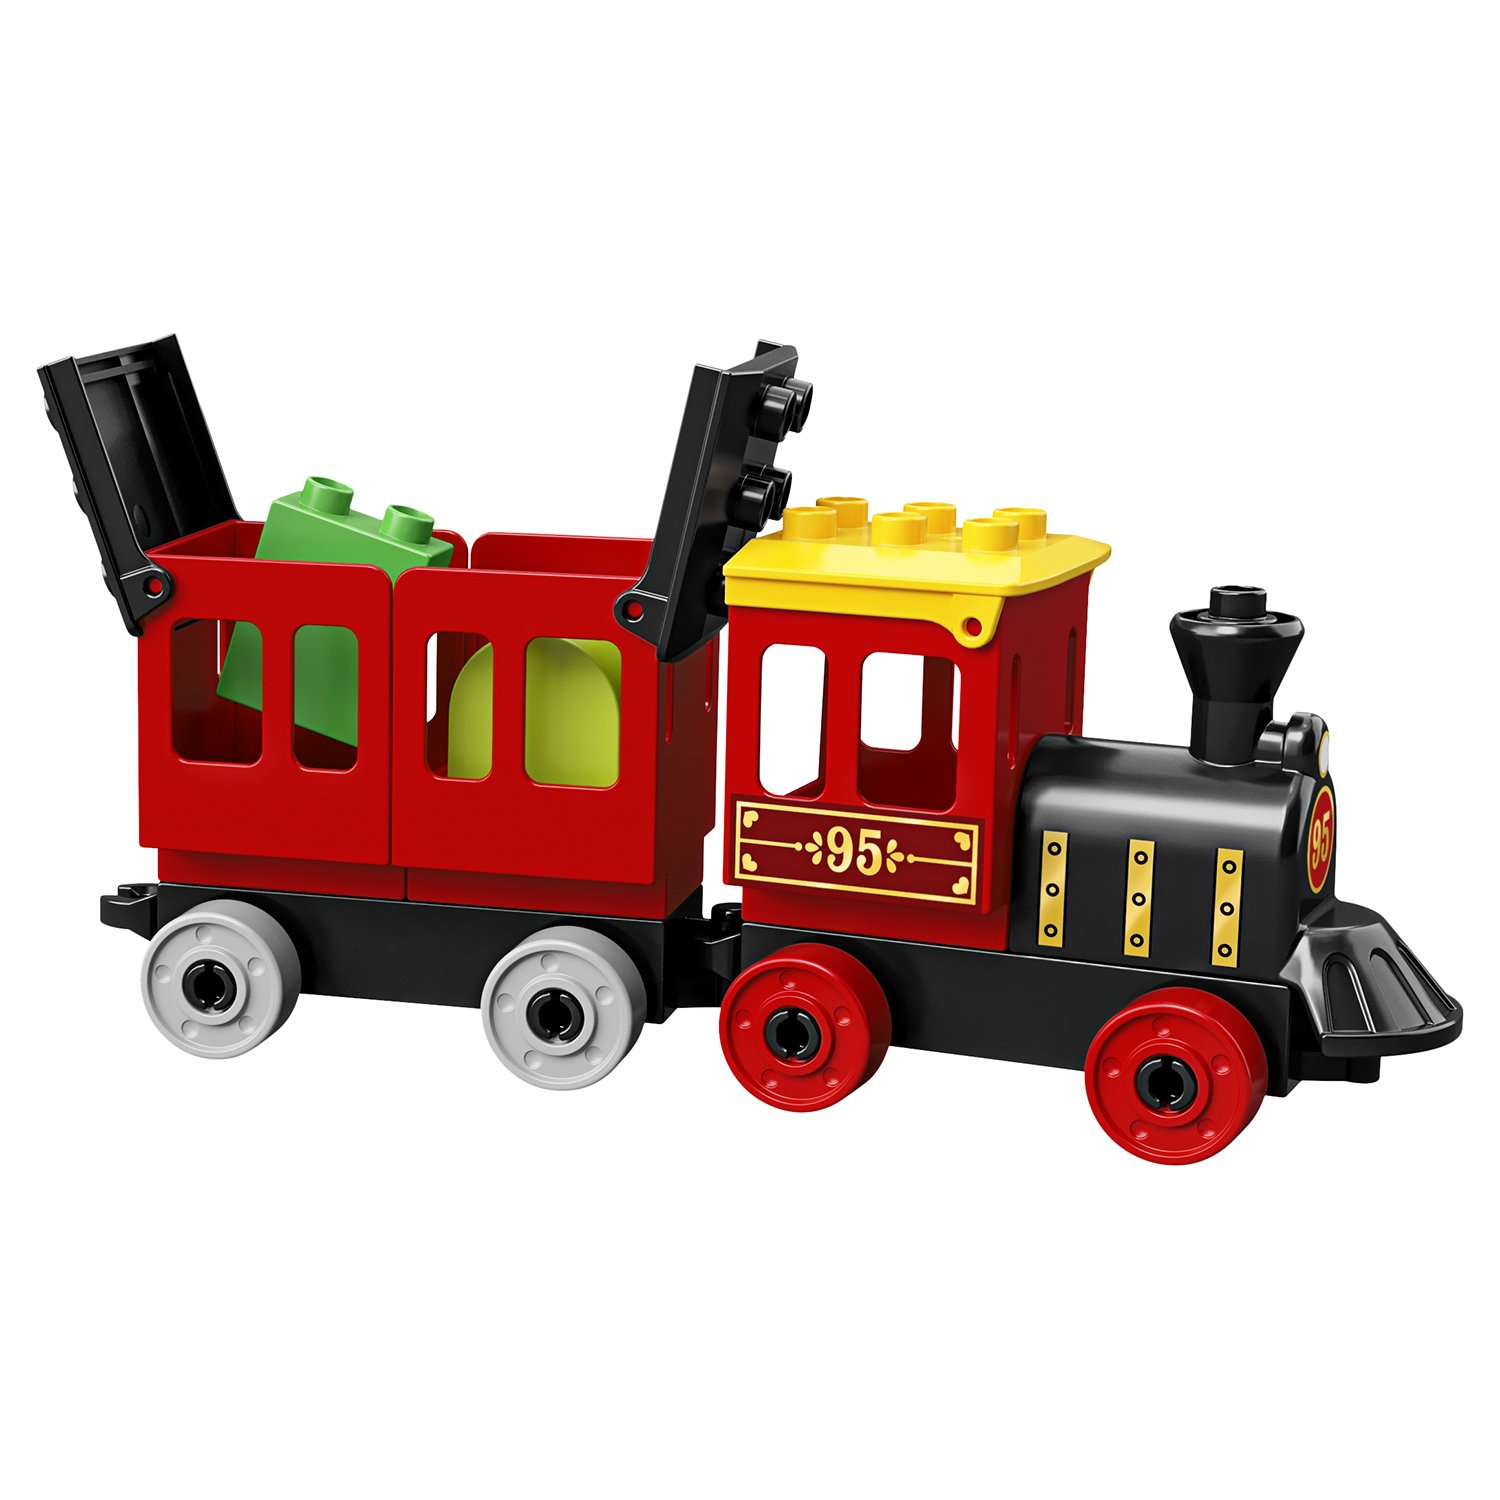 Lego Duplo 10894 Поезд История игрушек